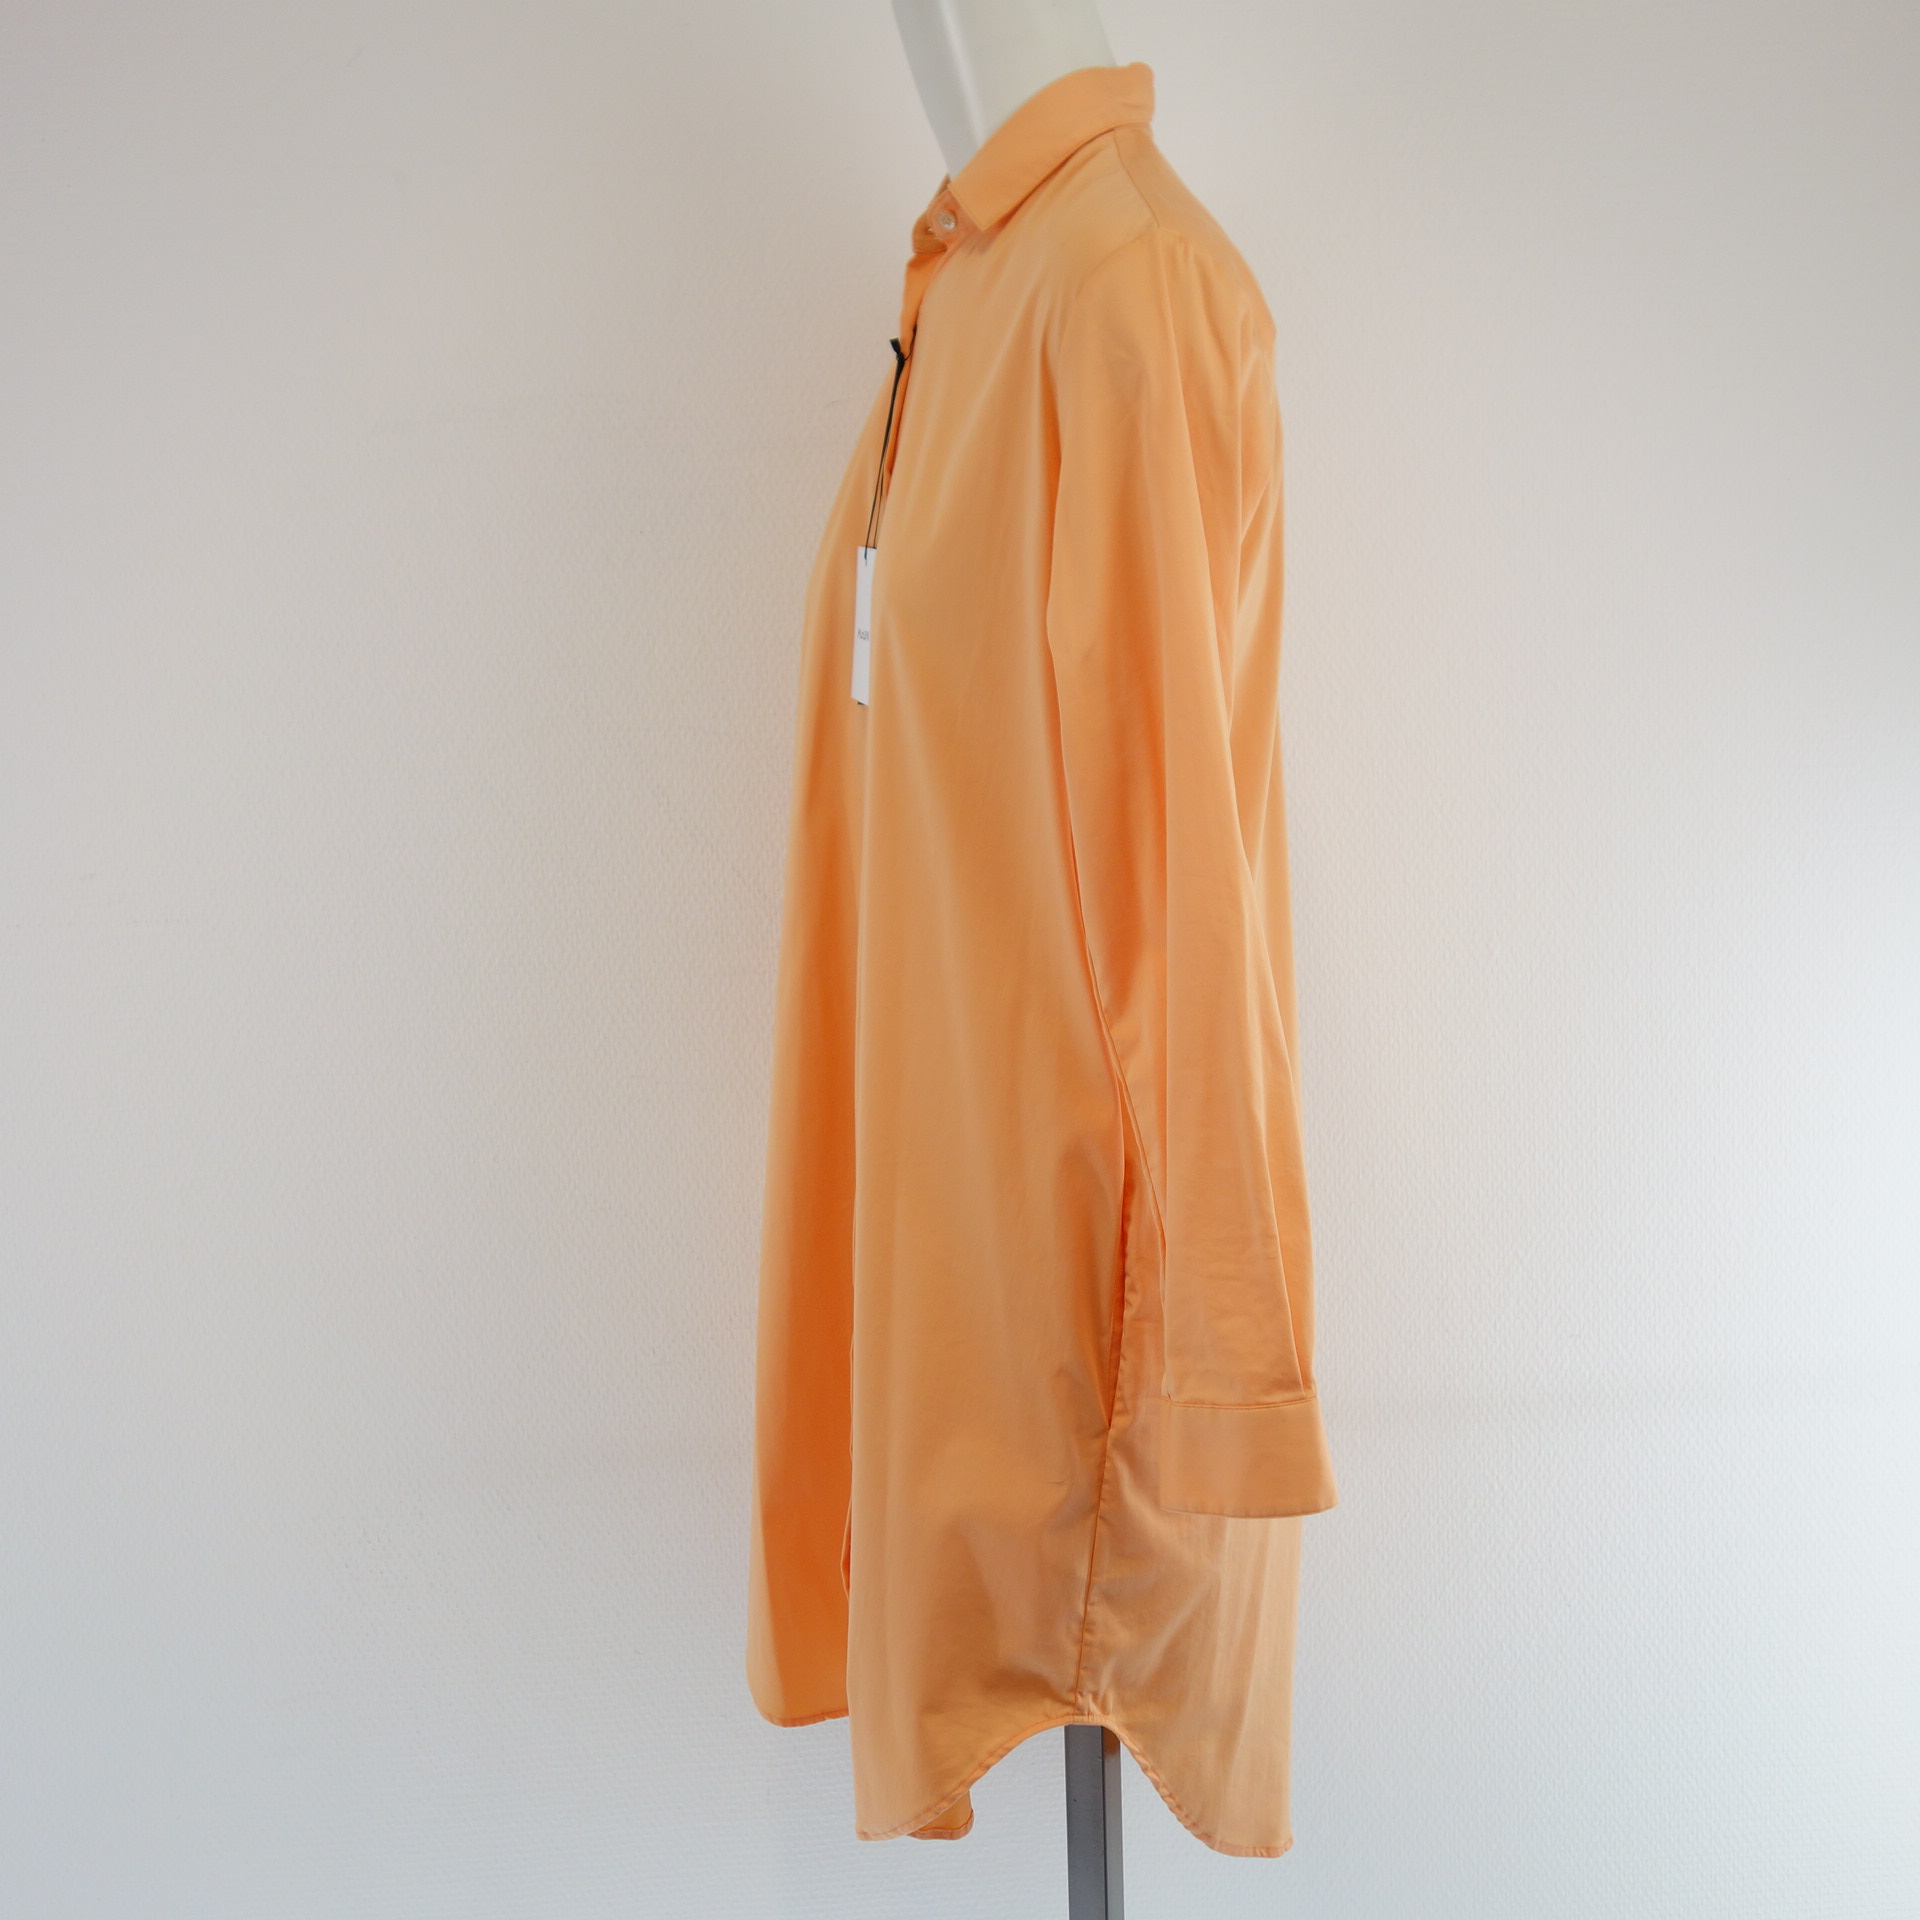 AGLINI Damen Kleid Tunika Lange Bluse Hemd Hemdkleid Tunikakleid Midi Orange